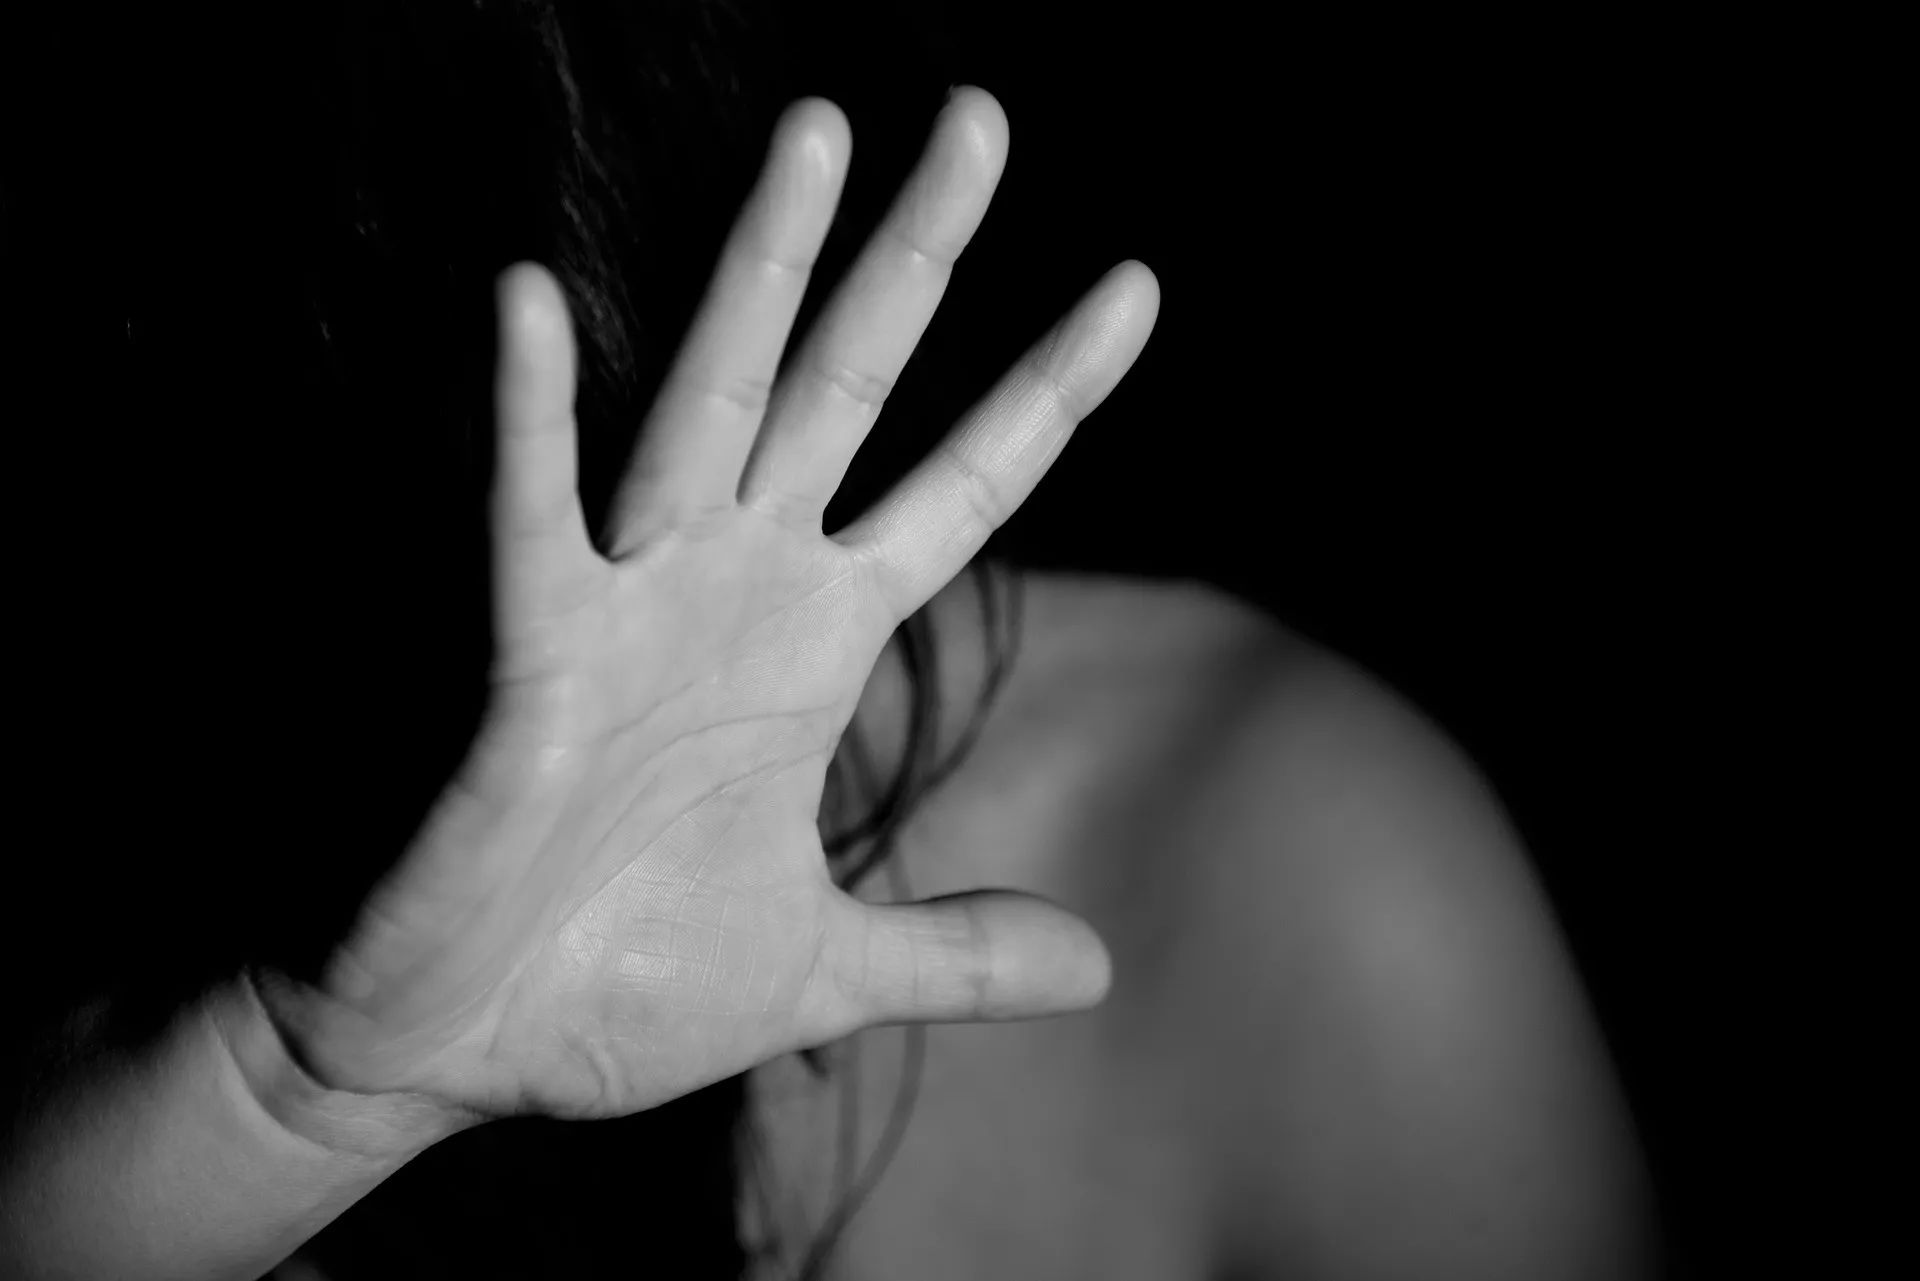 Trastorno de estrés postraumático y la depresión, los síntomas más frecuentes de las mujeres víctimas de violencia